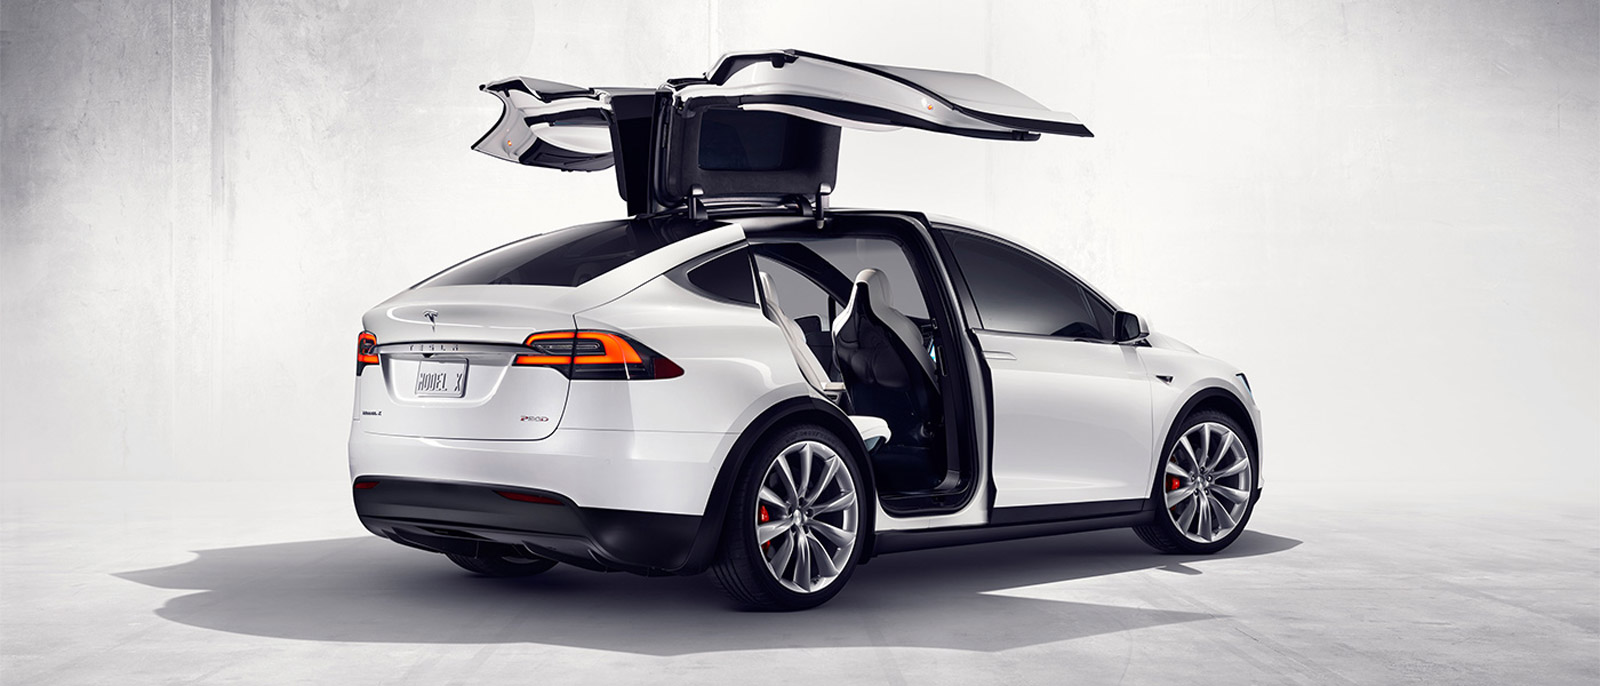 Dor Goederen referentie Tesla Motors Recalls 2,700 Model Xs